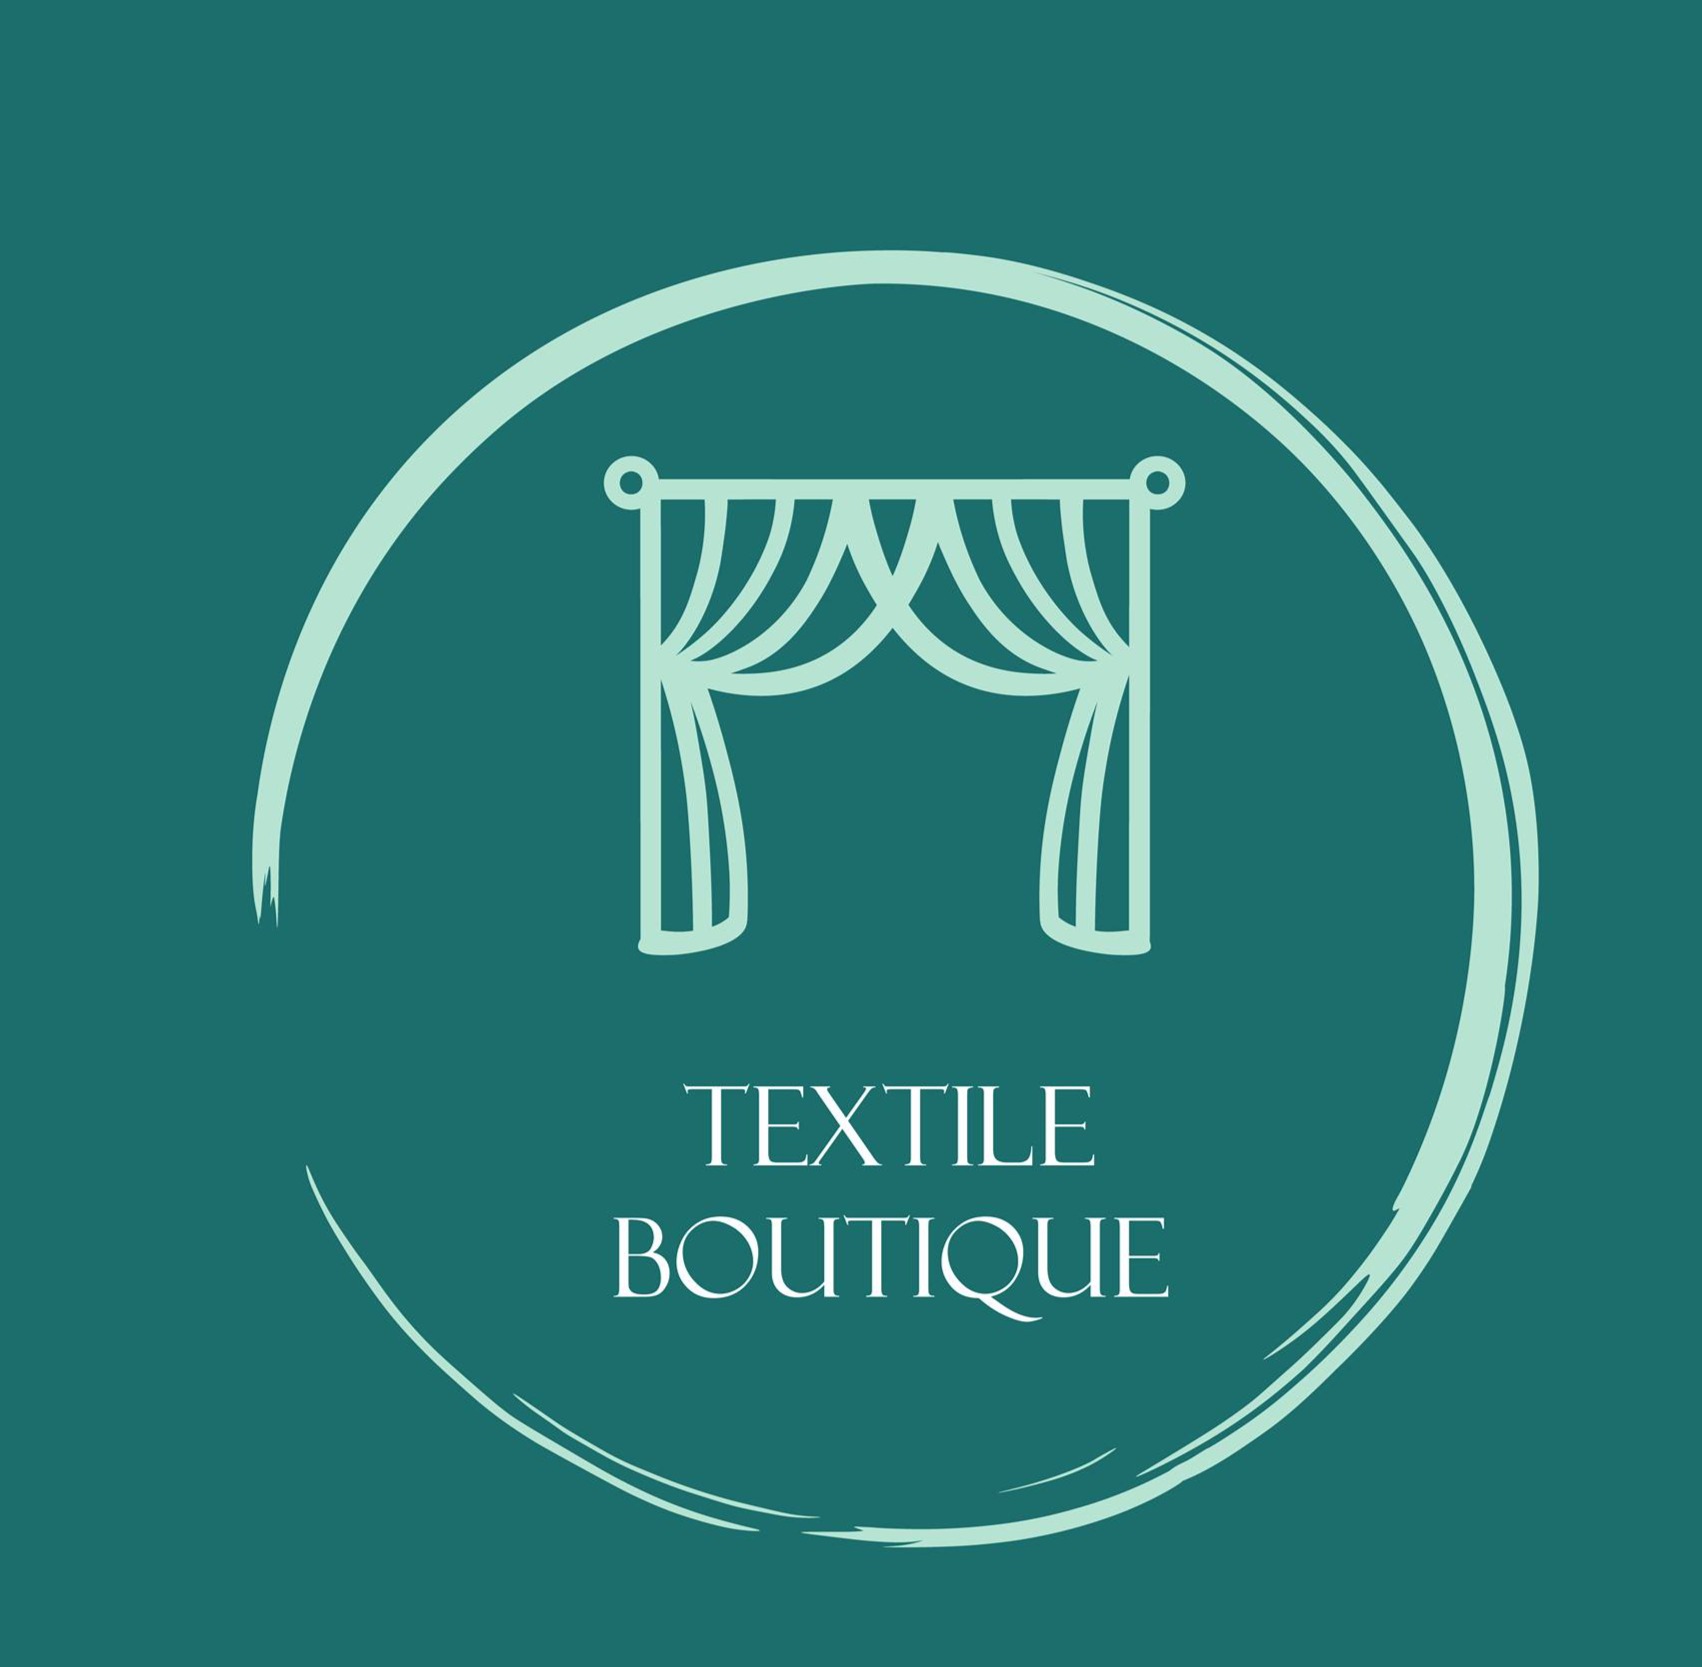 Textile Boutique